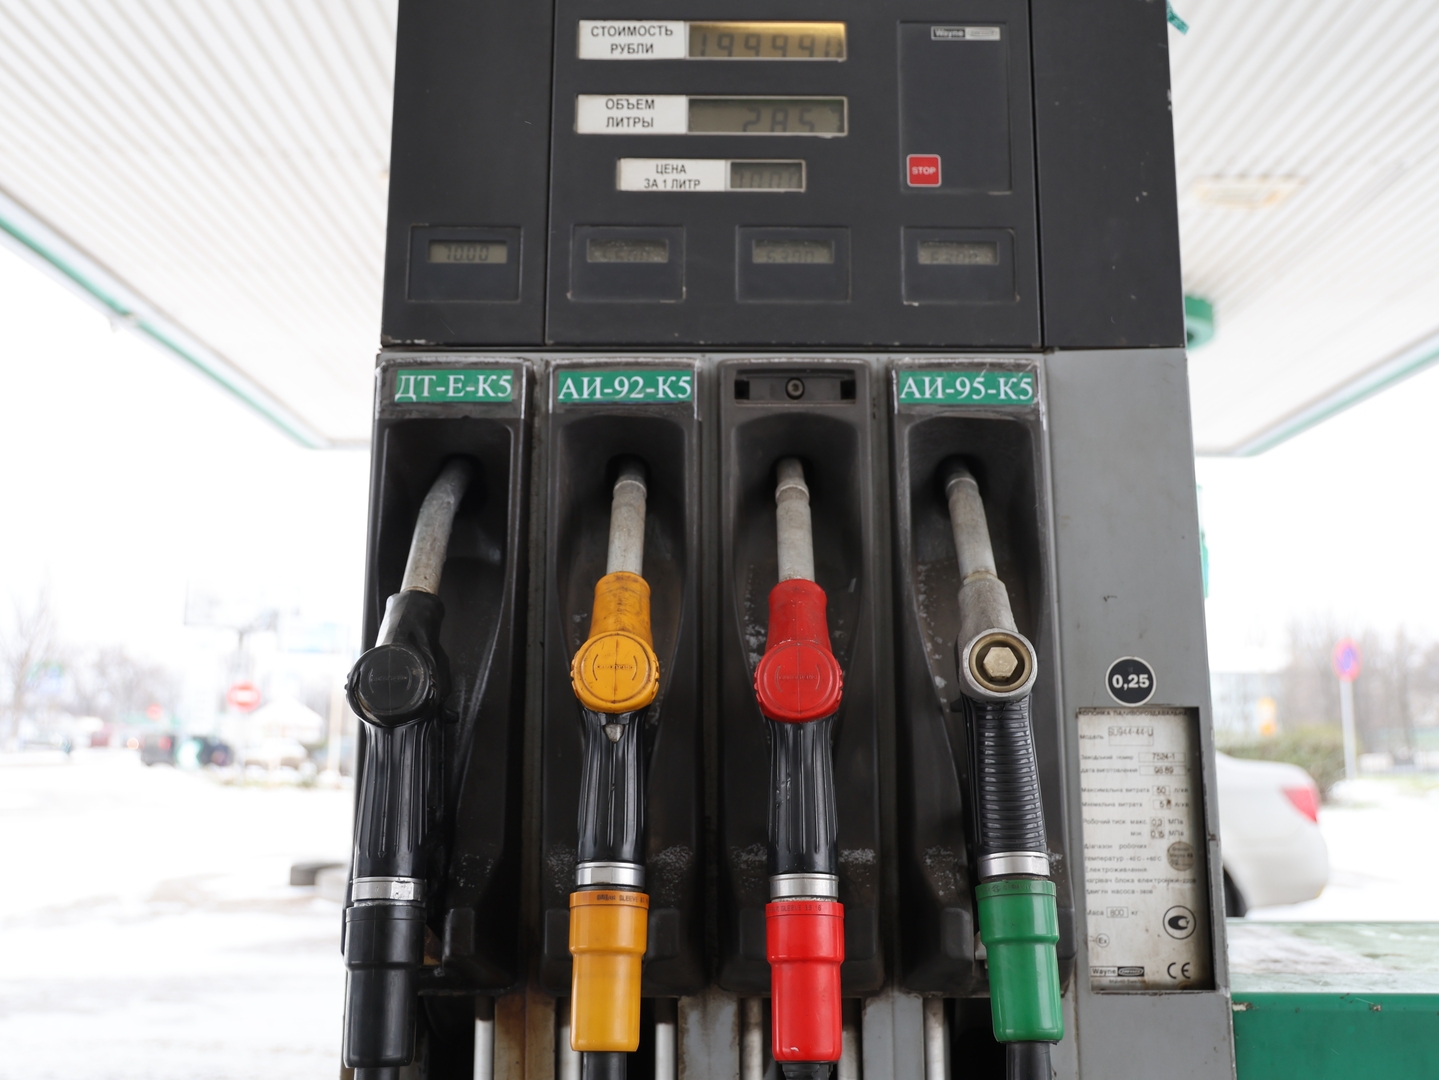 الأرجنتين الأولى عالميا في ارتفاع أسعار البنزين منذ بداية العام